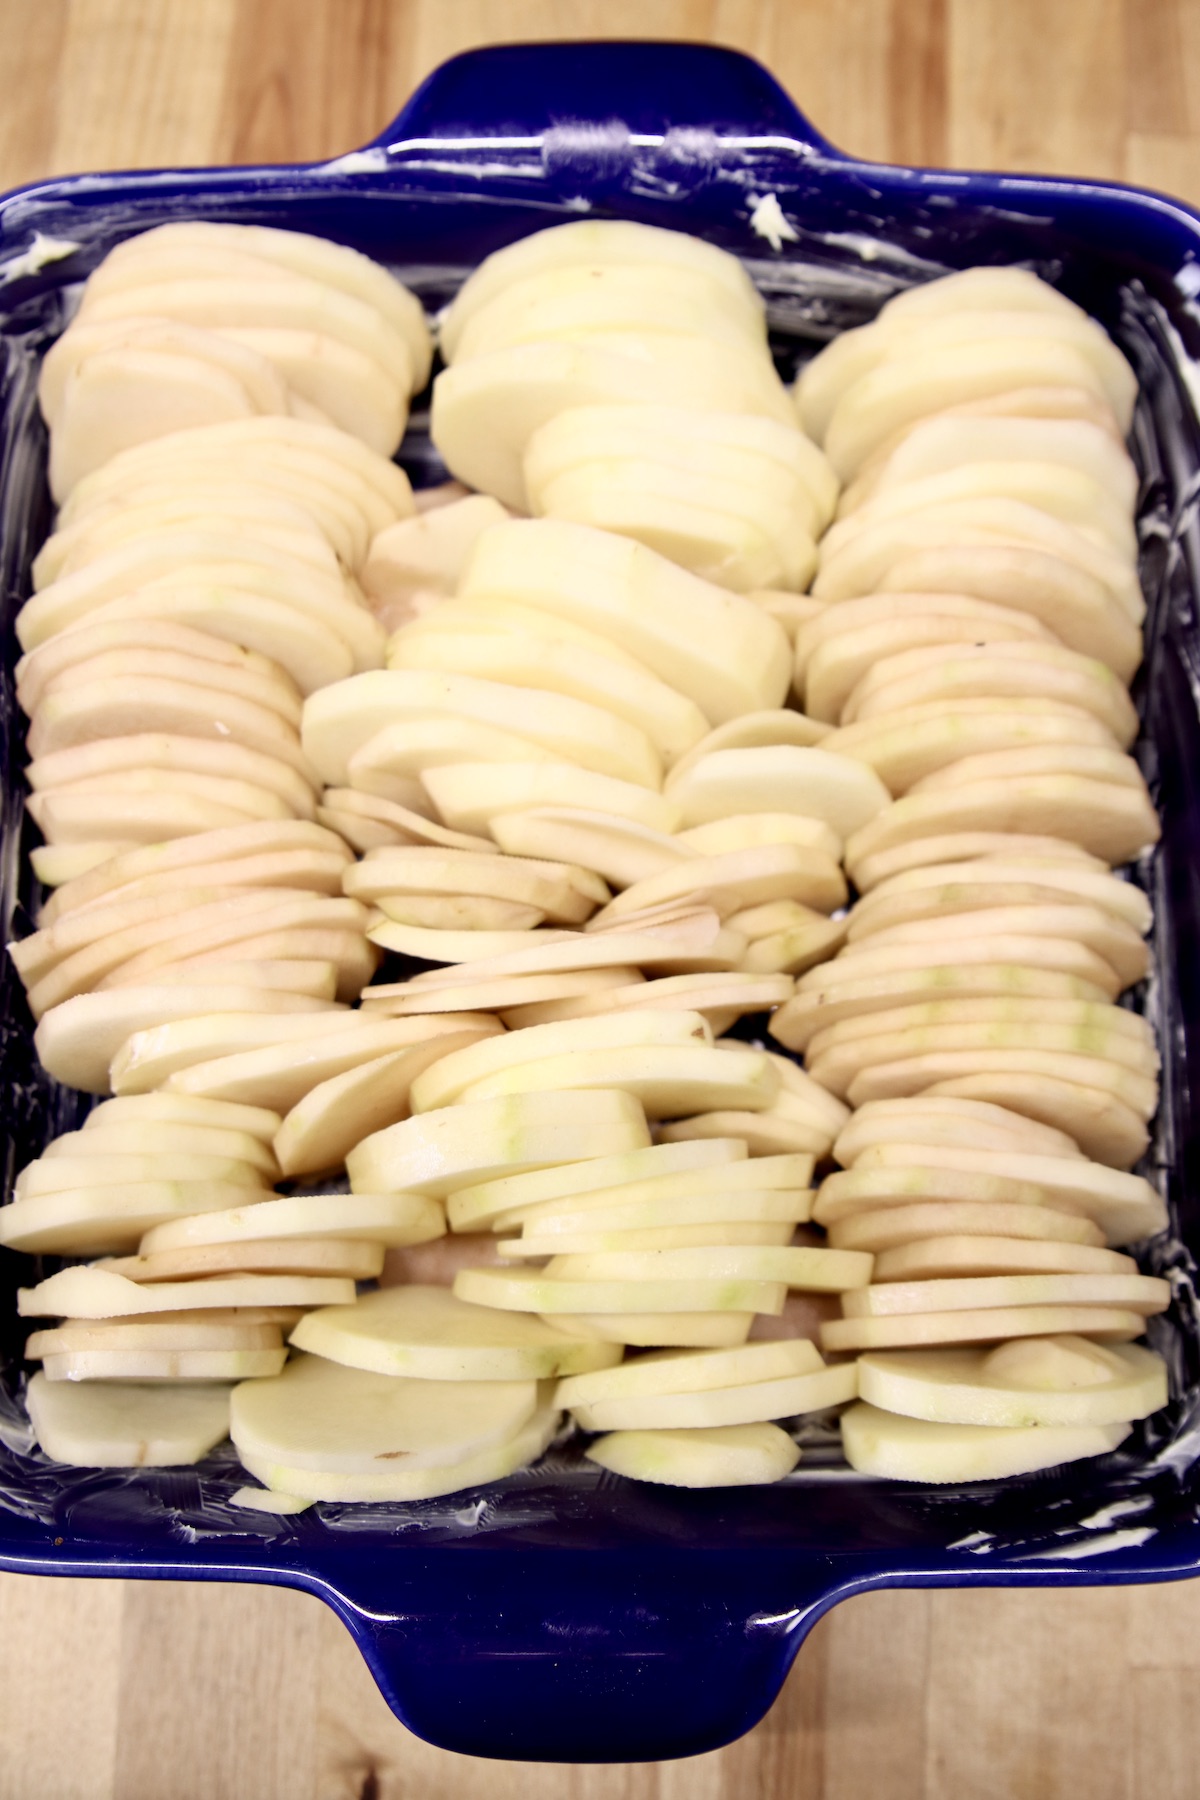 potato slices in a casserole dish